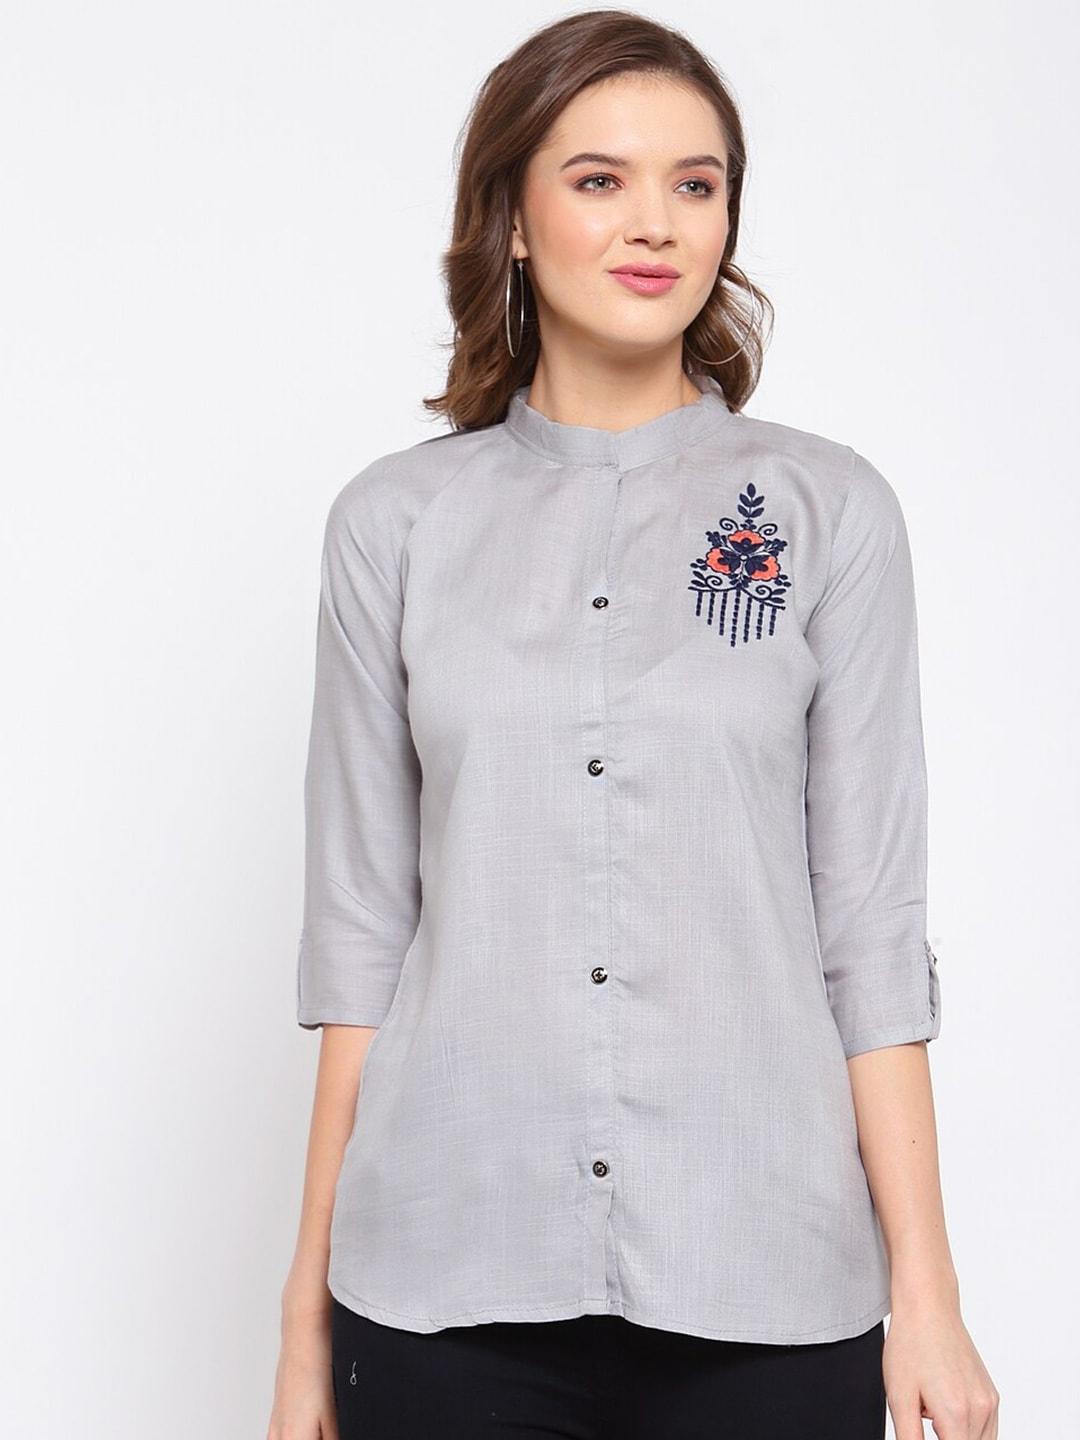 SERONA FABRICS Grey Band Collar Placement Print Shirt Style Top